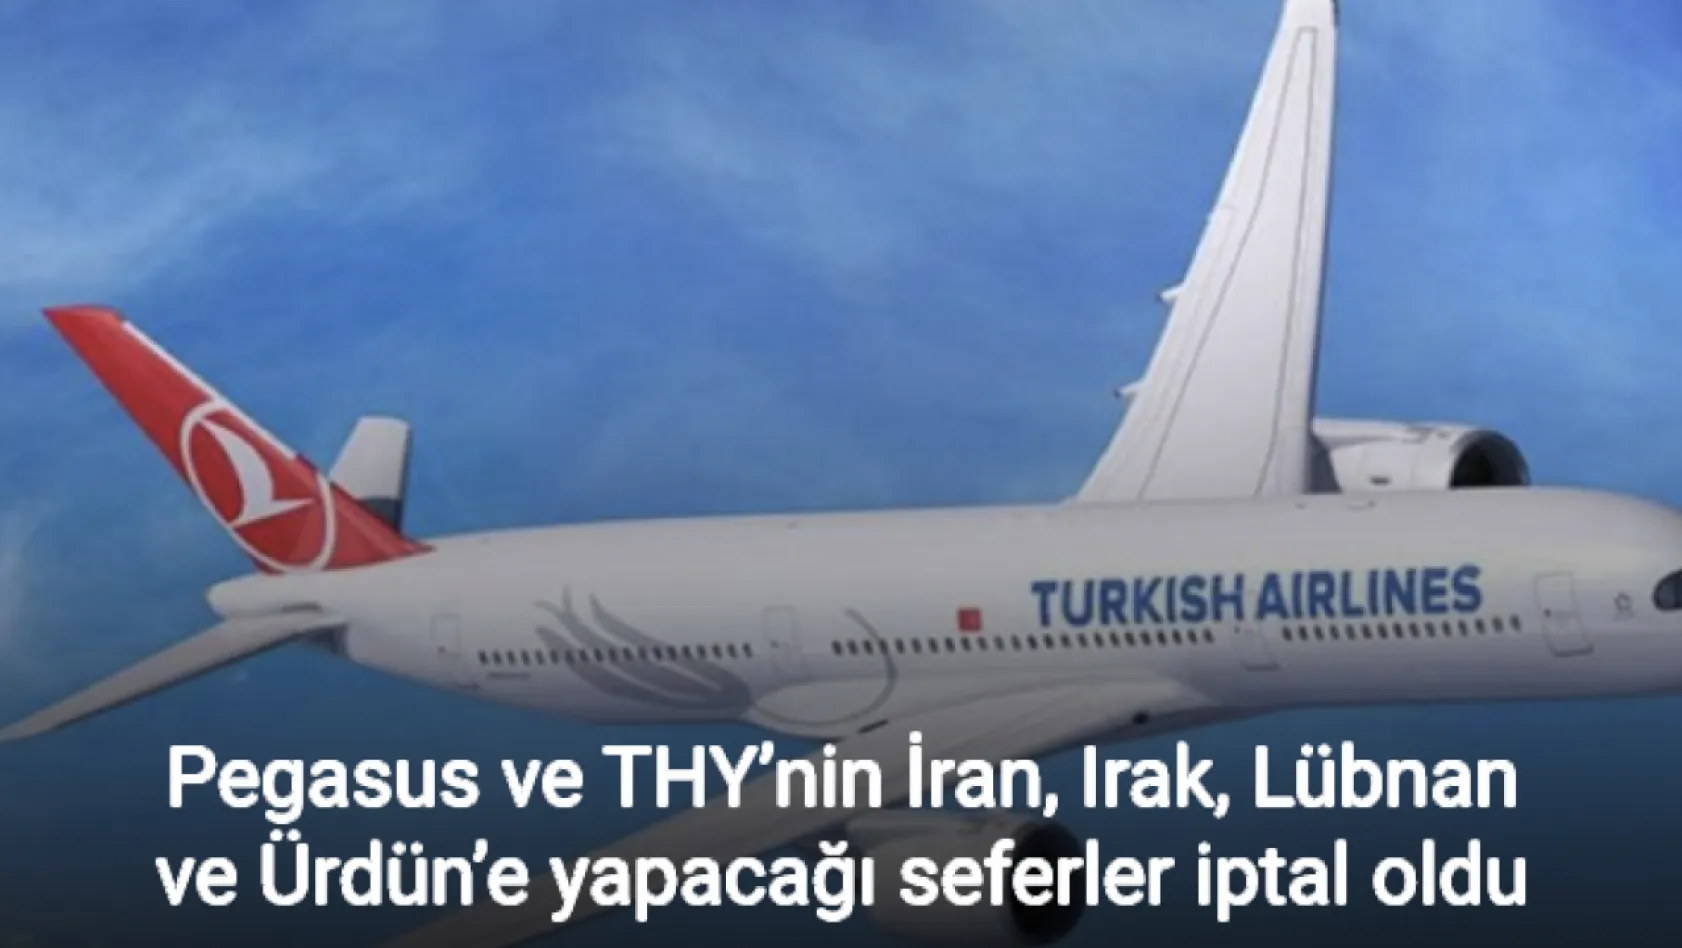 Pegasus ve THY'nin İran, Irak, Lübnan ve Ürdün'e yapacağı seferler iptal oldu